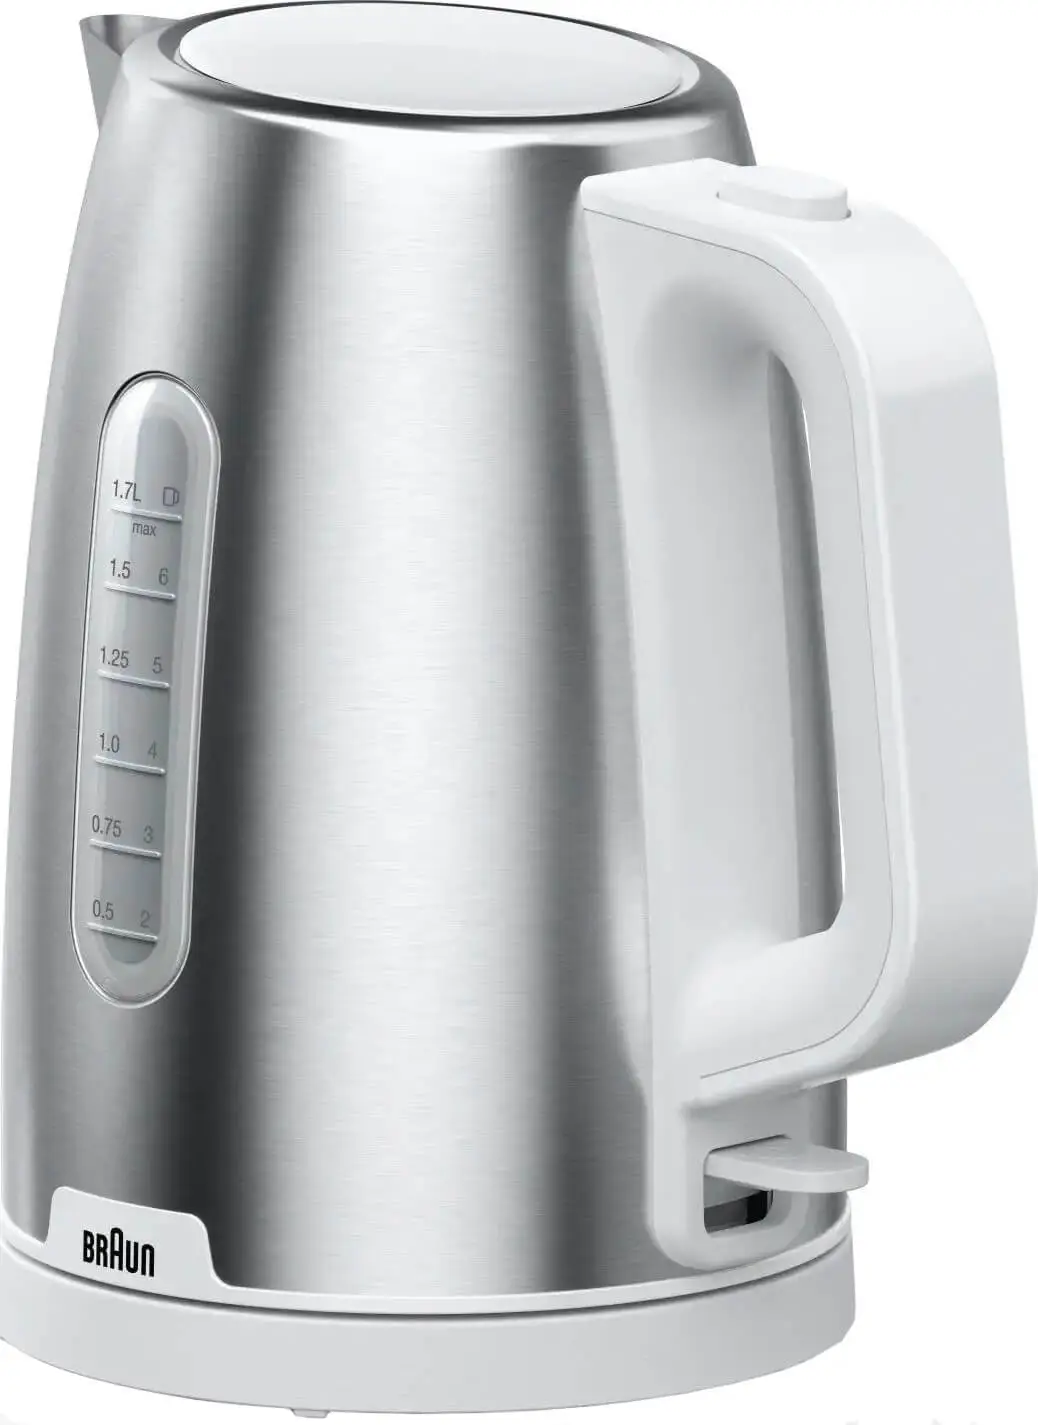 Чайник электрический Braun WK1500WH 1.7 л белый, серебристый поворотное основание с переходником для быстрого снятия сидений 178х178мм 1100115